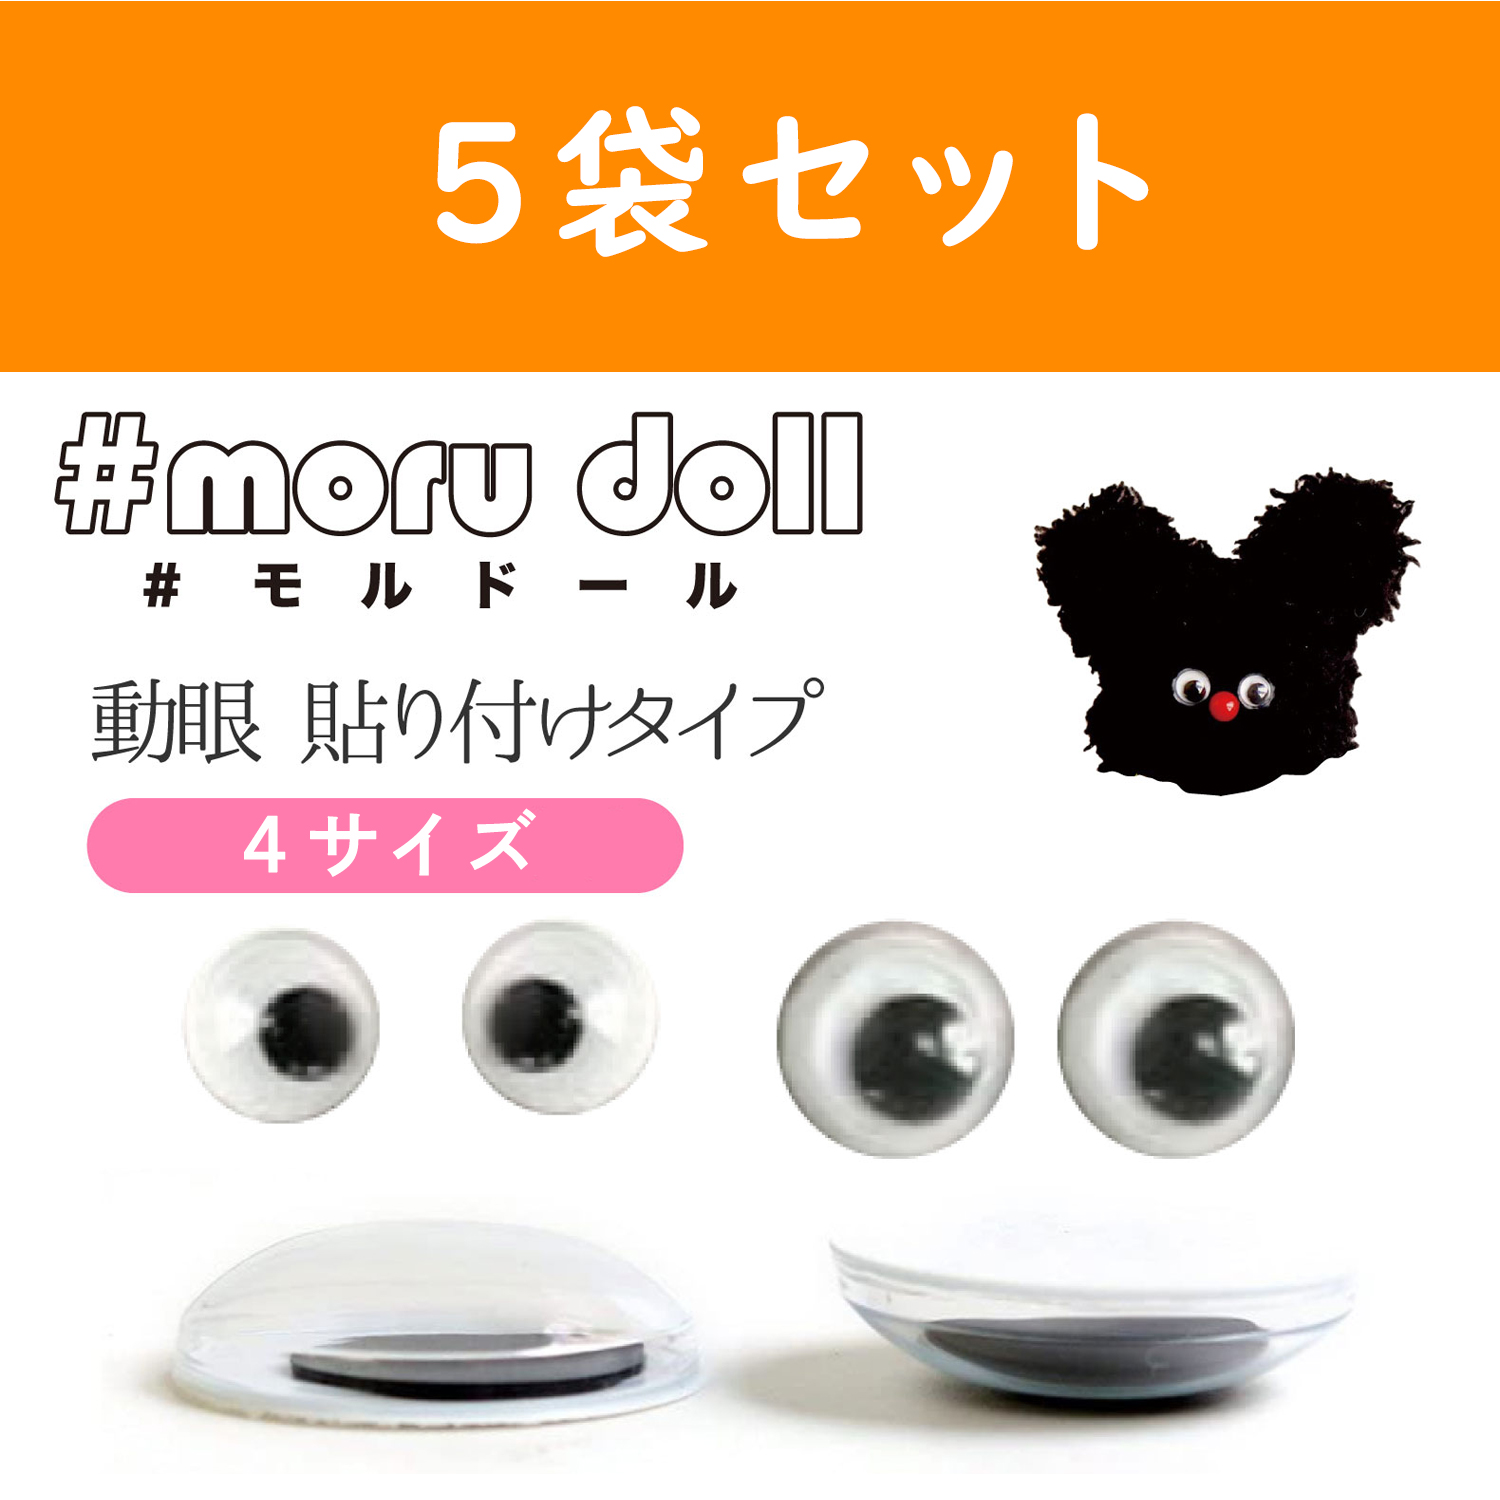 【キャンペーン対象】MOL-5 モール人形 モールドール  動眼 貼付 10個入×5袋セット (セット)